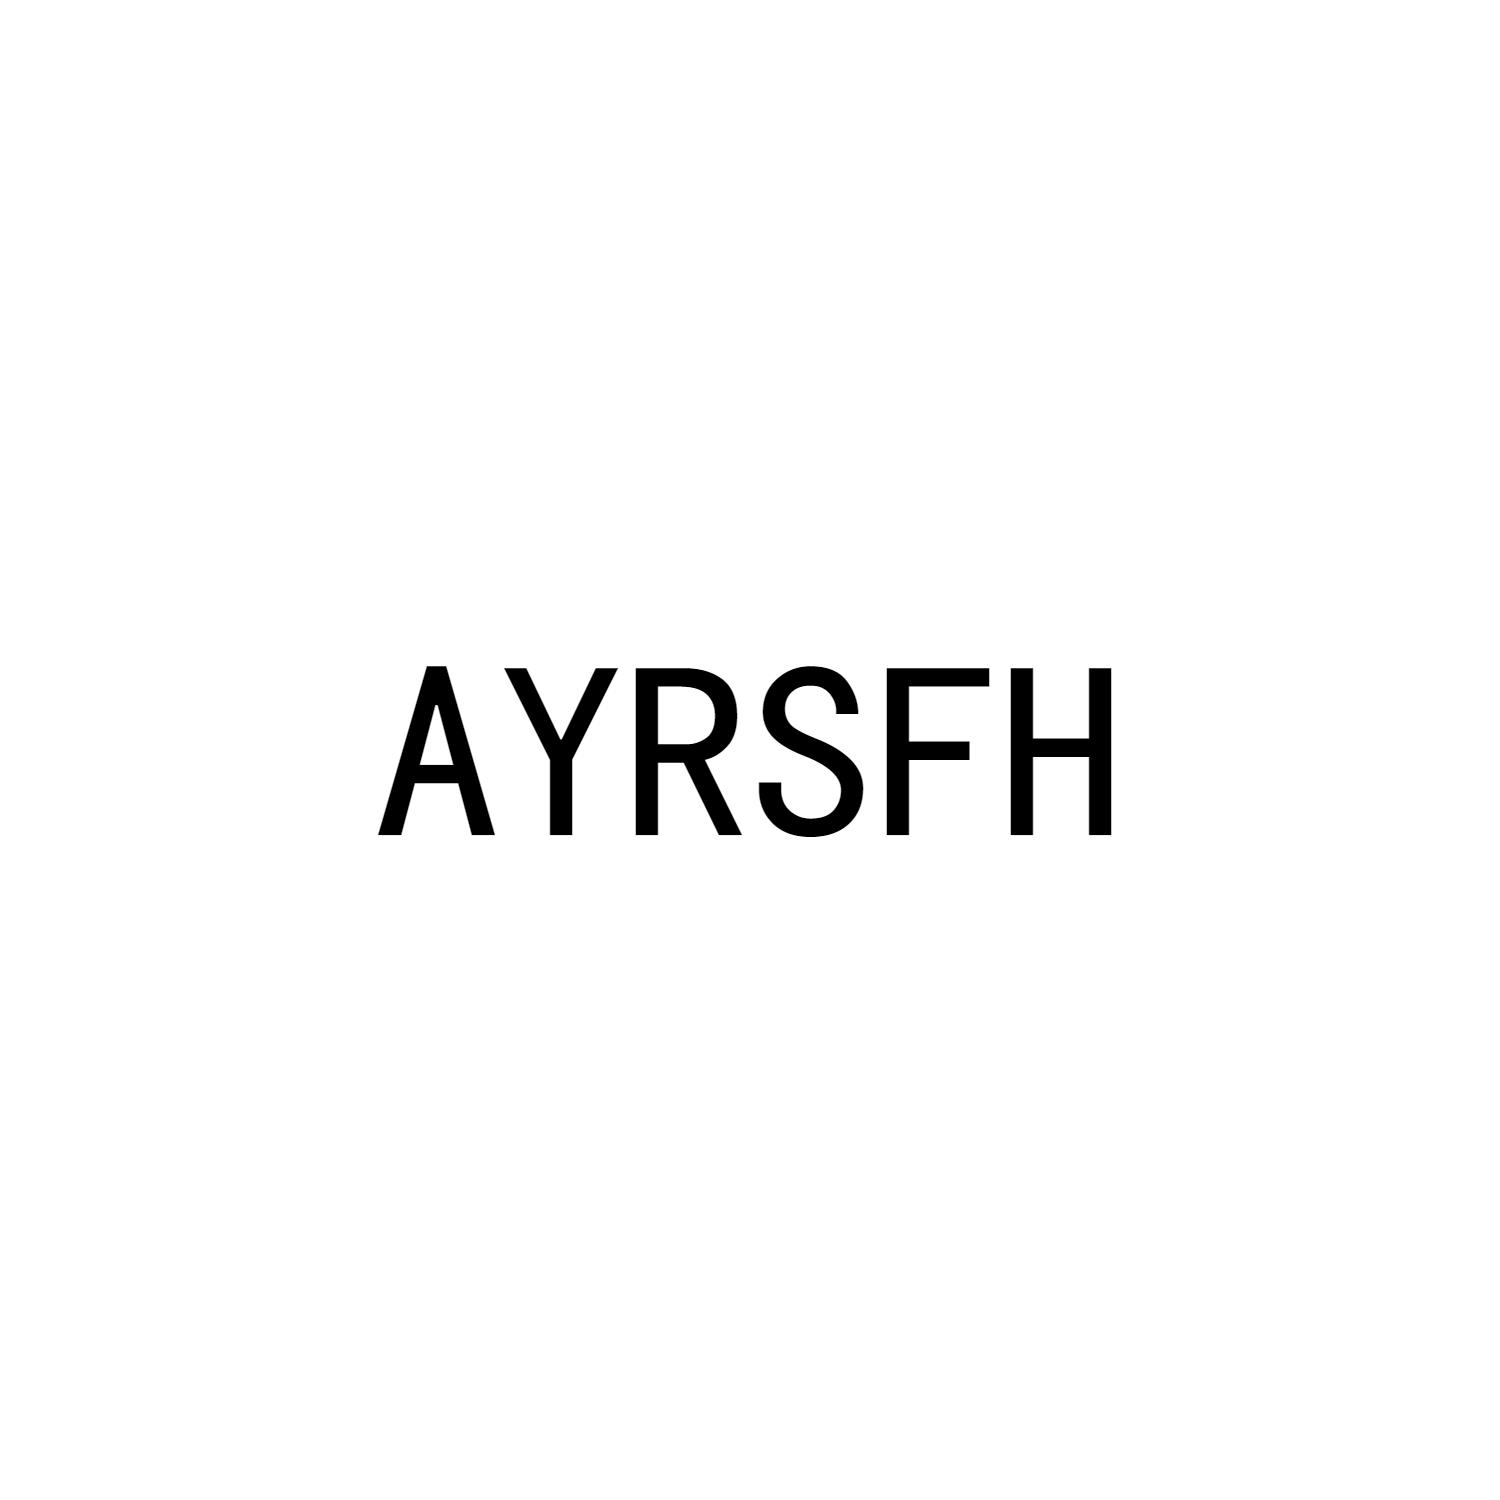 AYRSFH